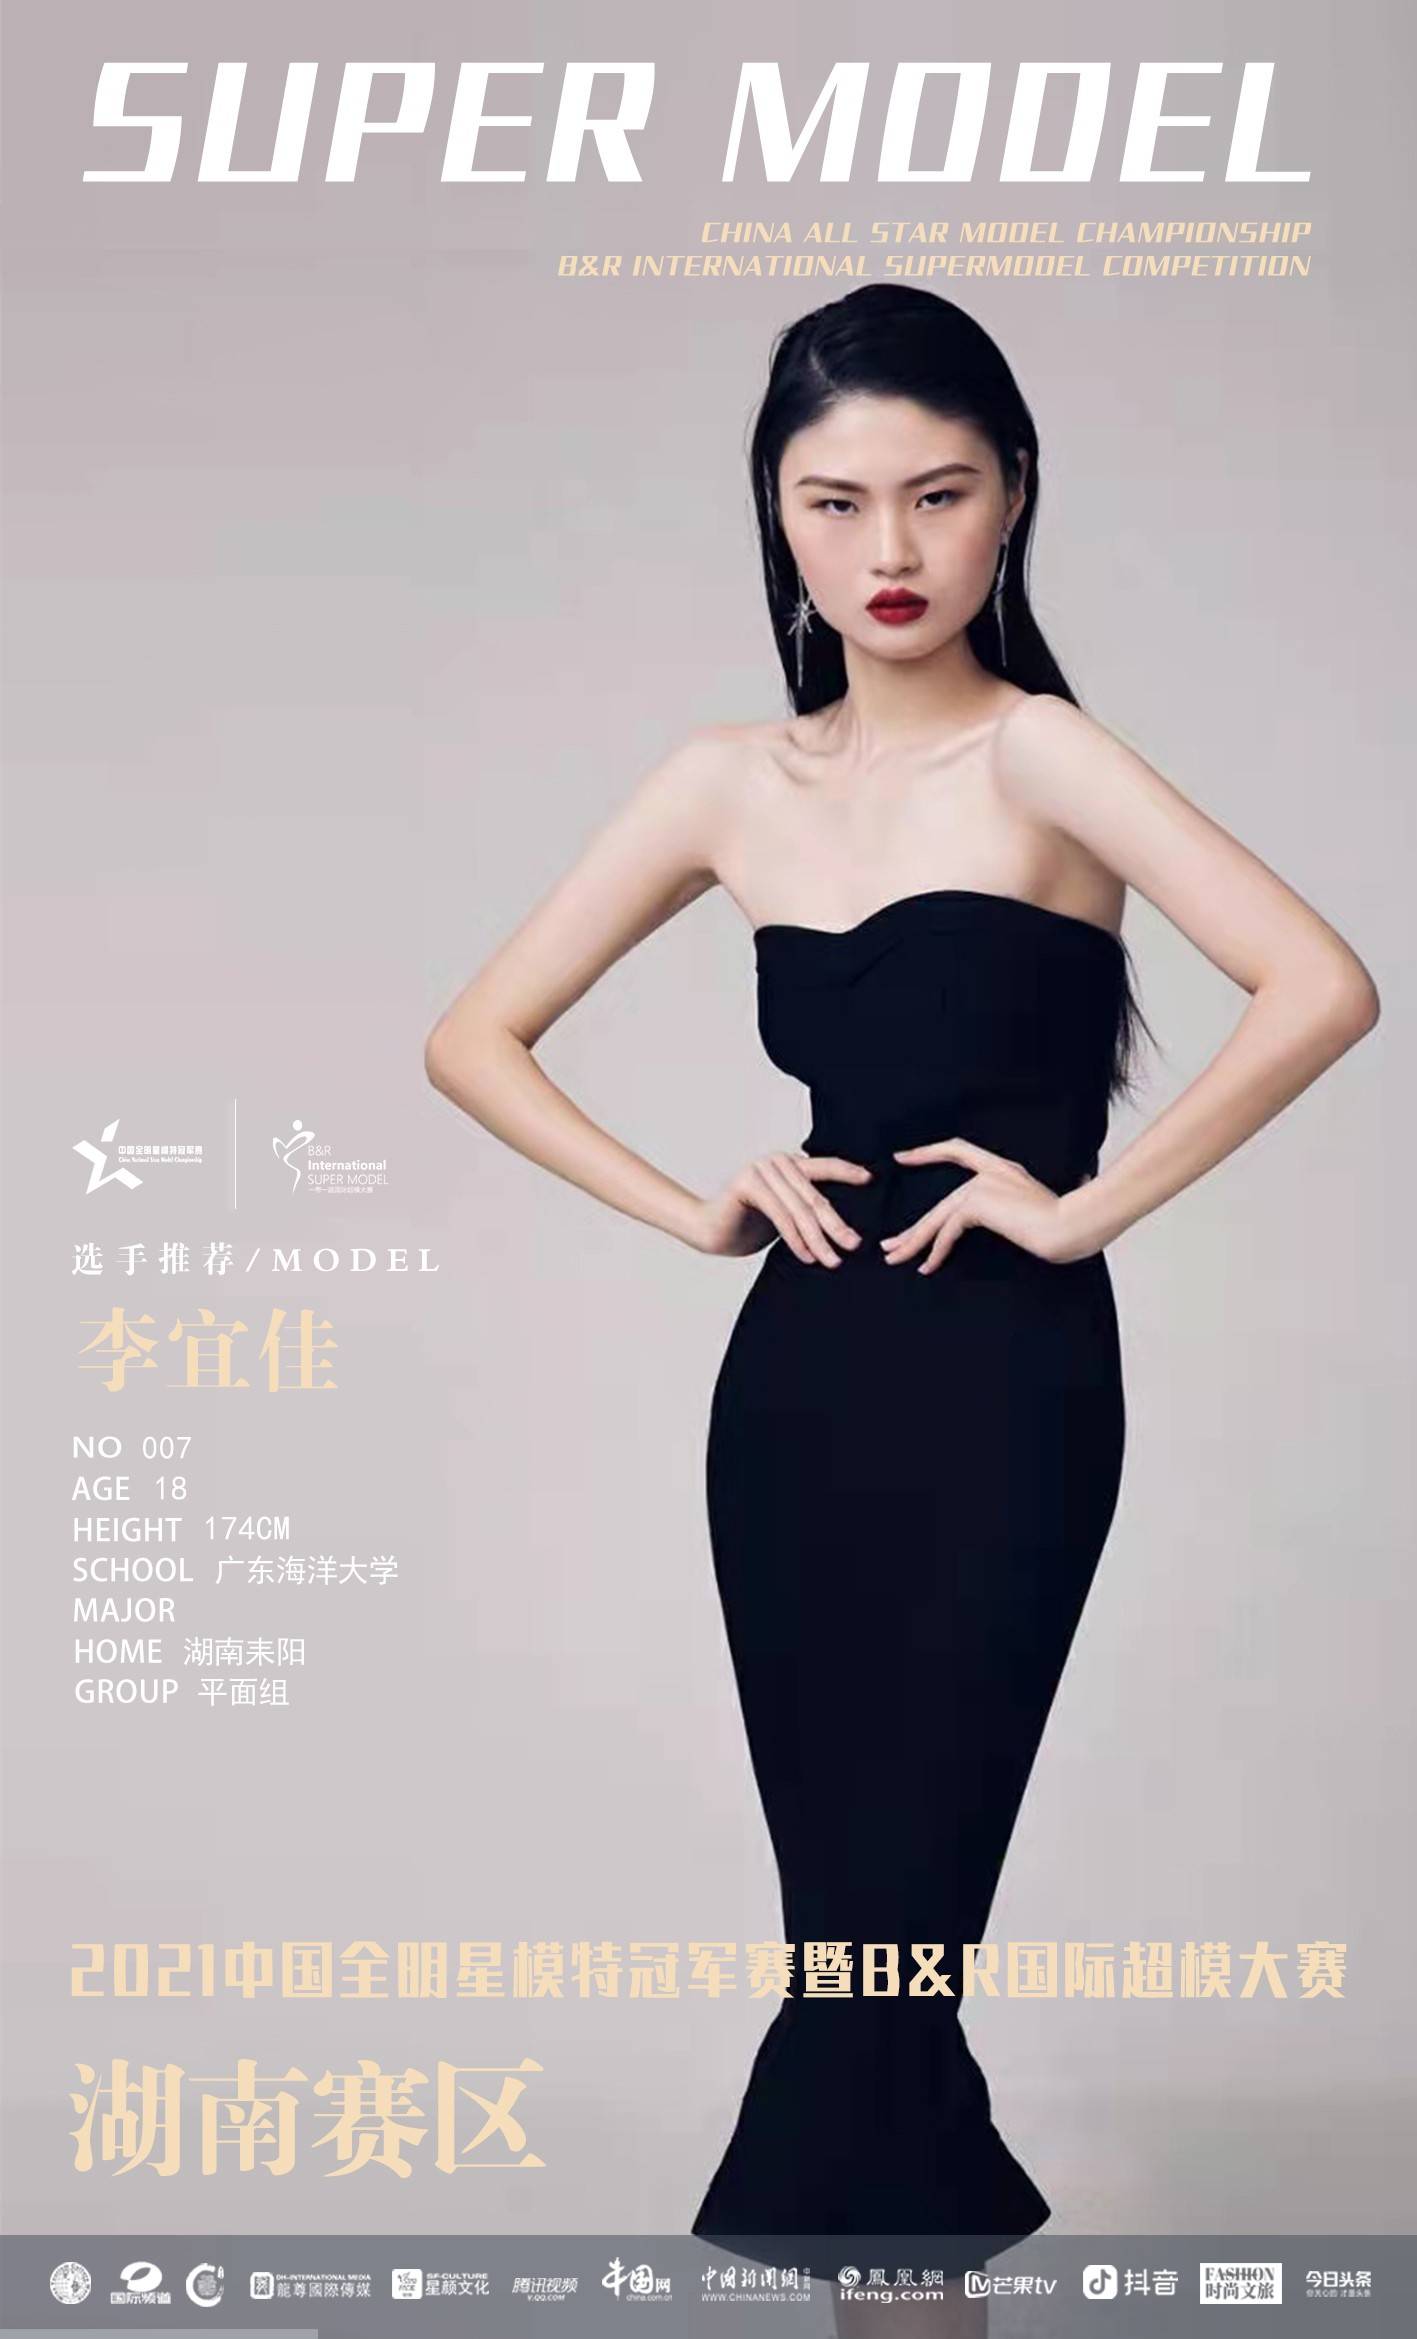 潮爆了 | 2021中国全明星模特冠军赛暨b&r国际超模大赛选手推荐!